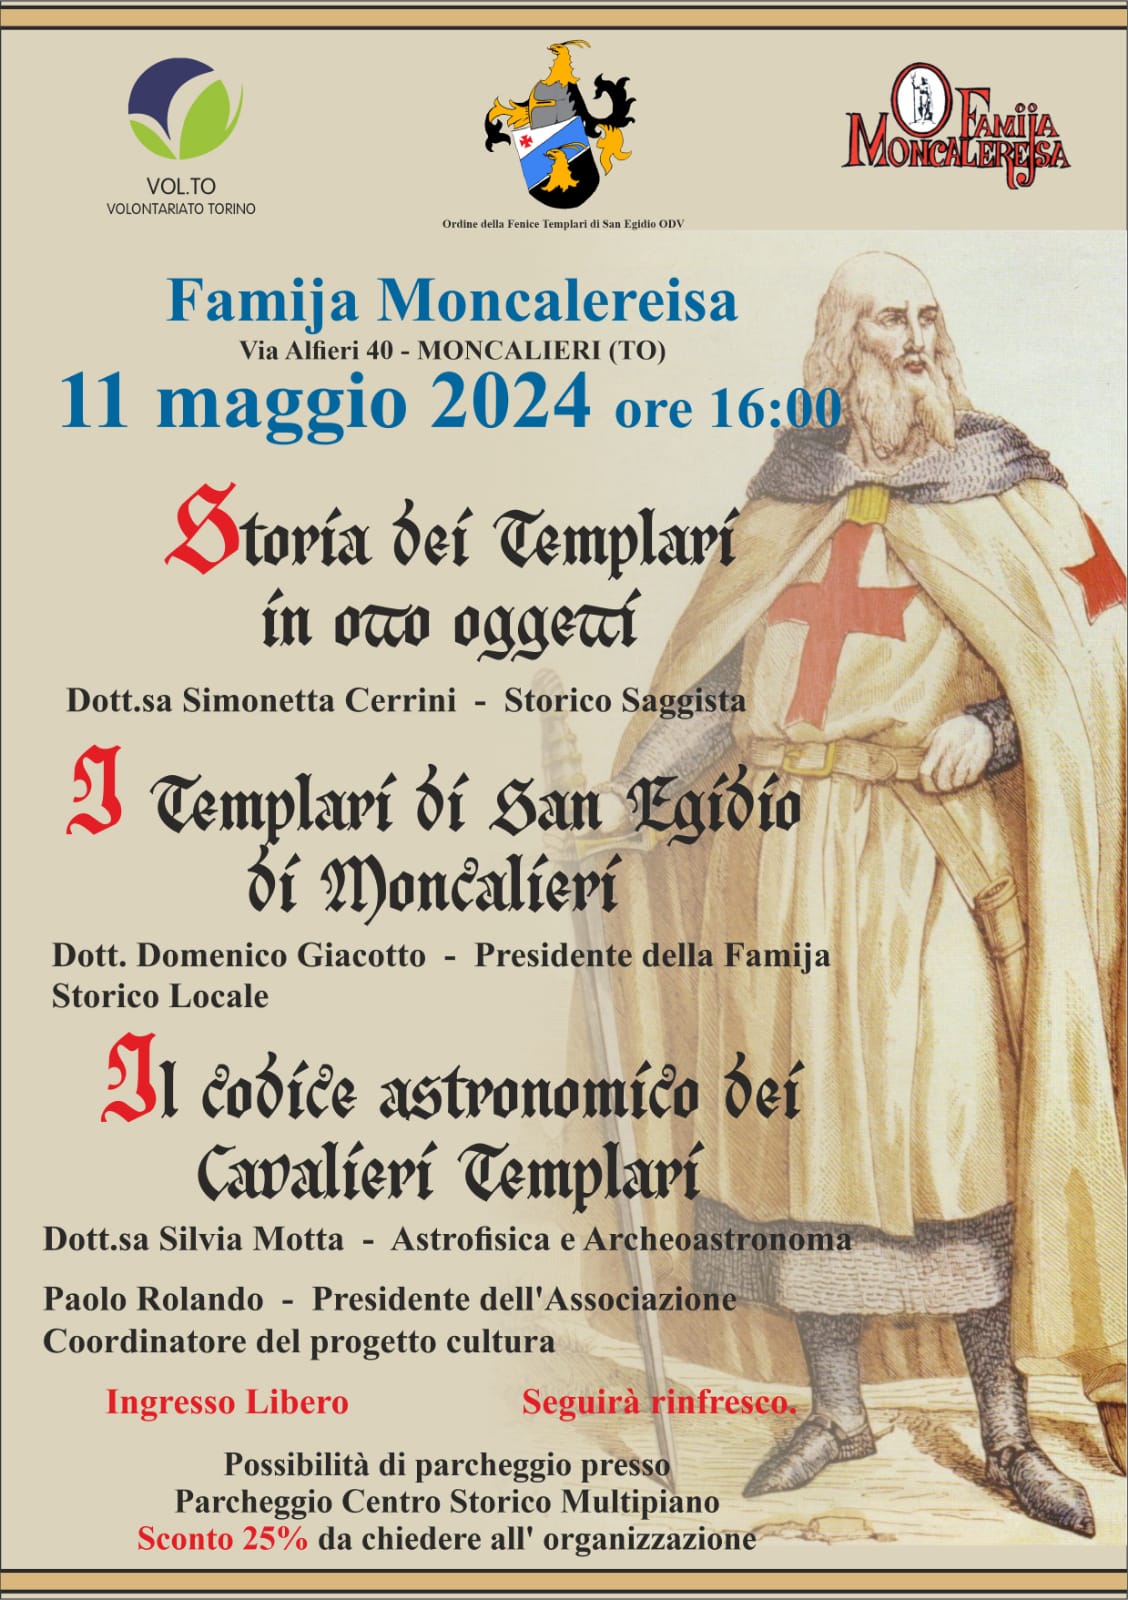 Storia dei Templari presso la Famija Moncalereisa